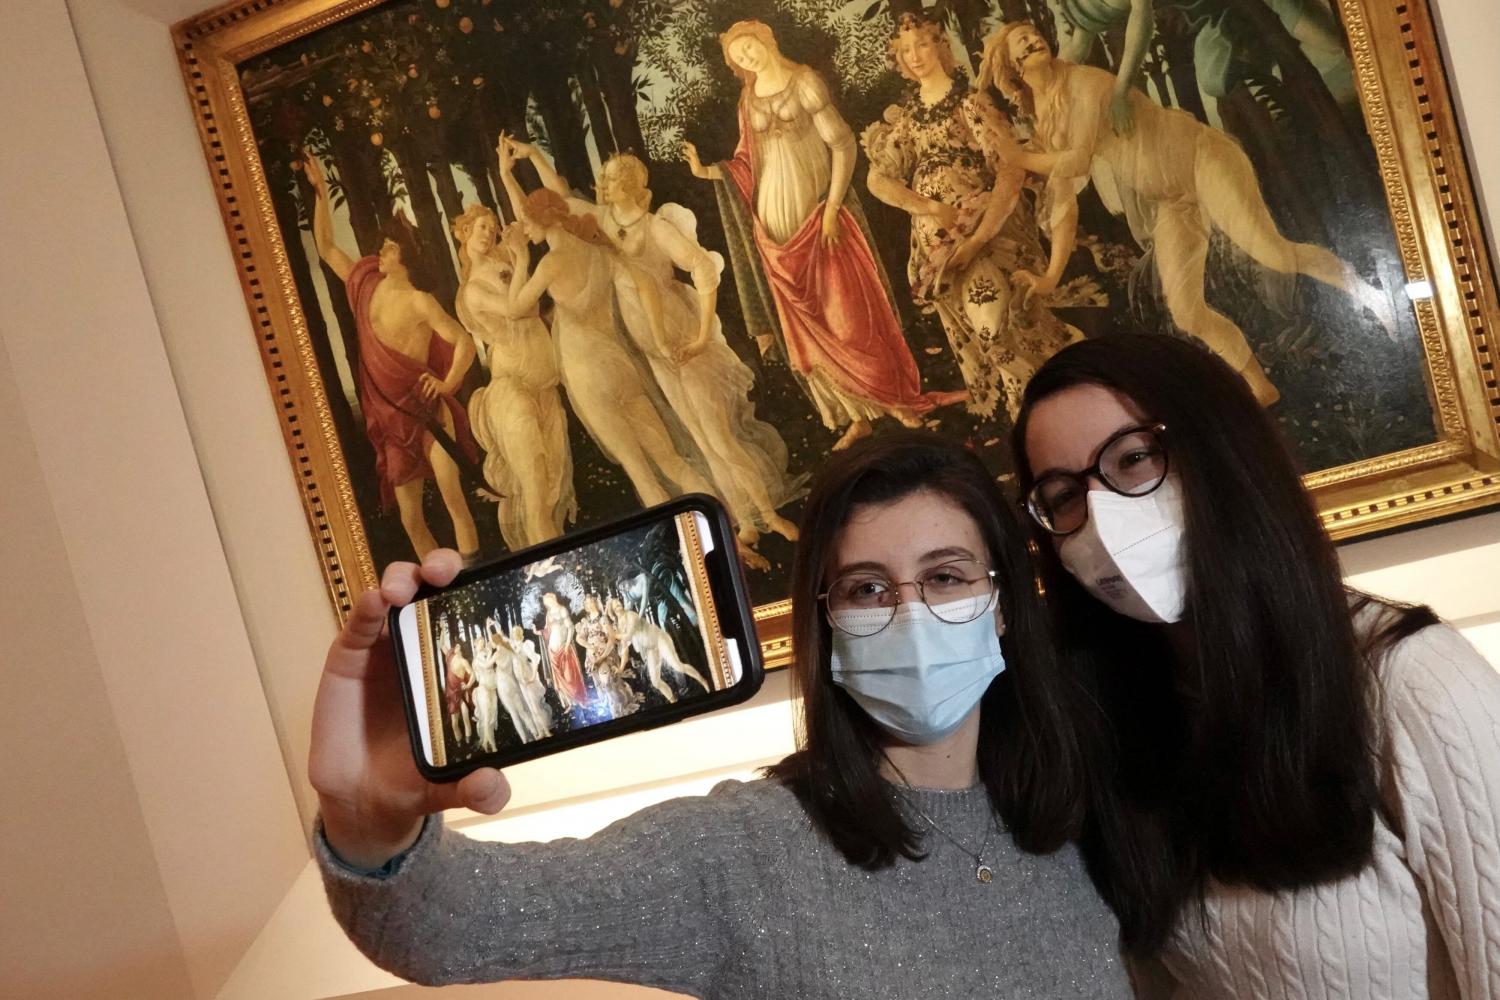 Besucherinnen vor dem Botticellis "Primavera" (etwa um 1480) in den Uffizien in Florenz